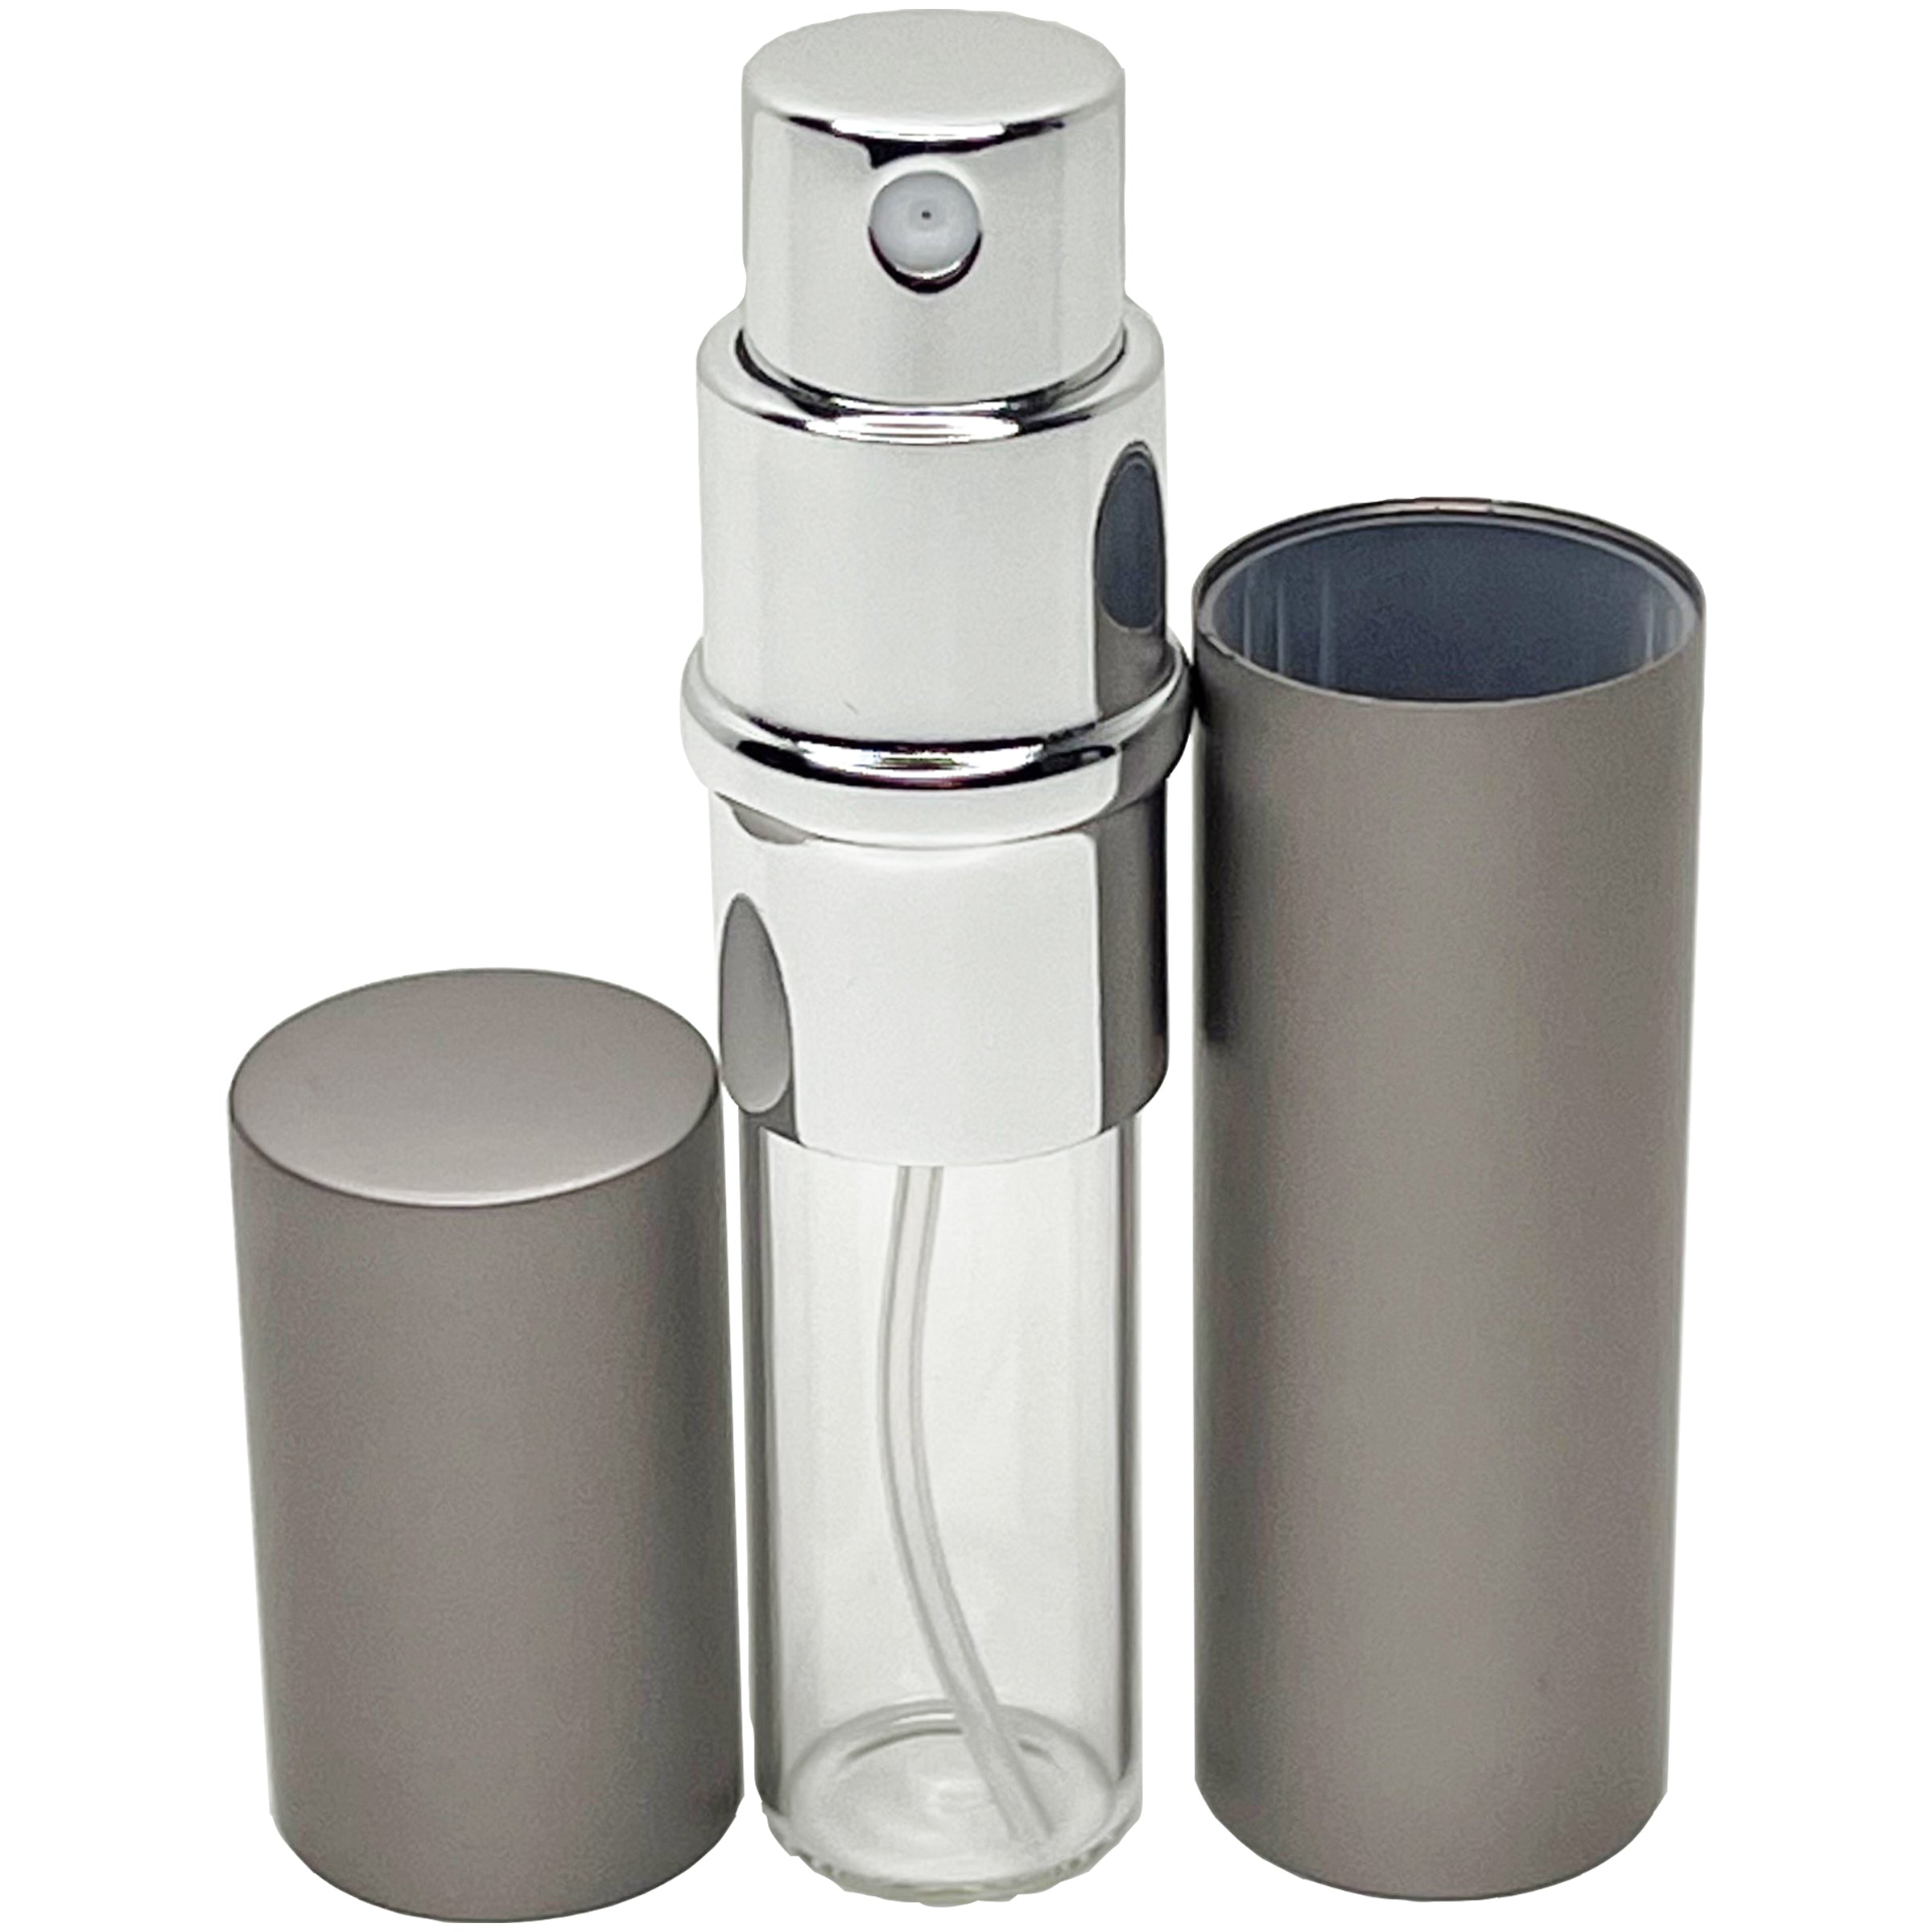 6ml 0.2oz perfume glass spray bottles gray aluminum shell